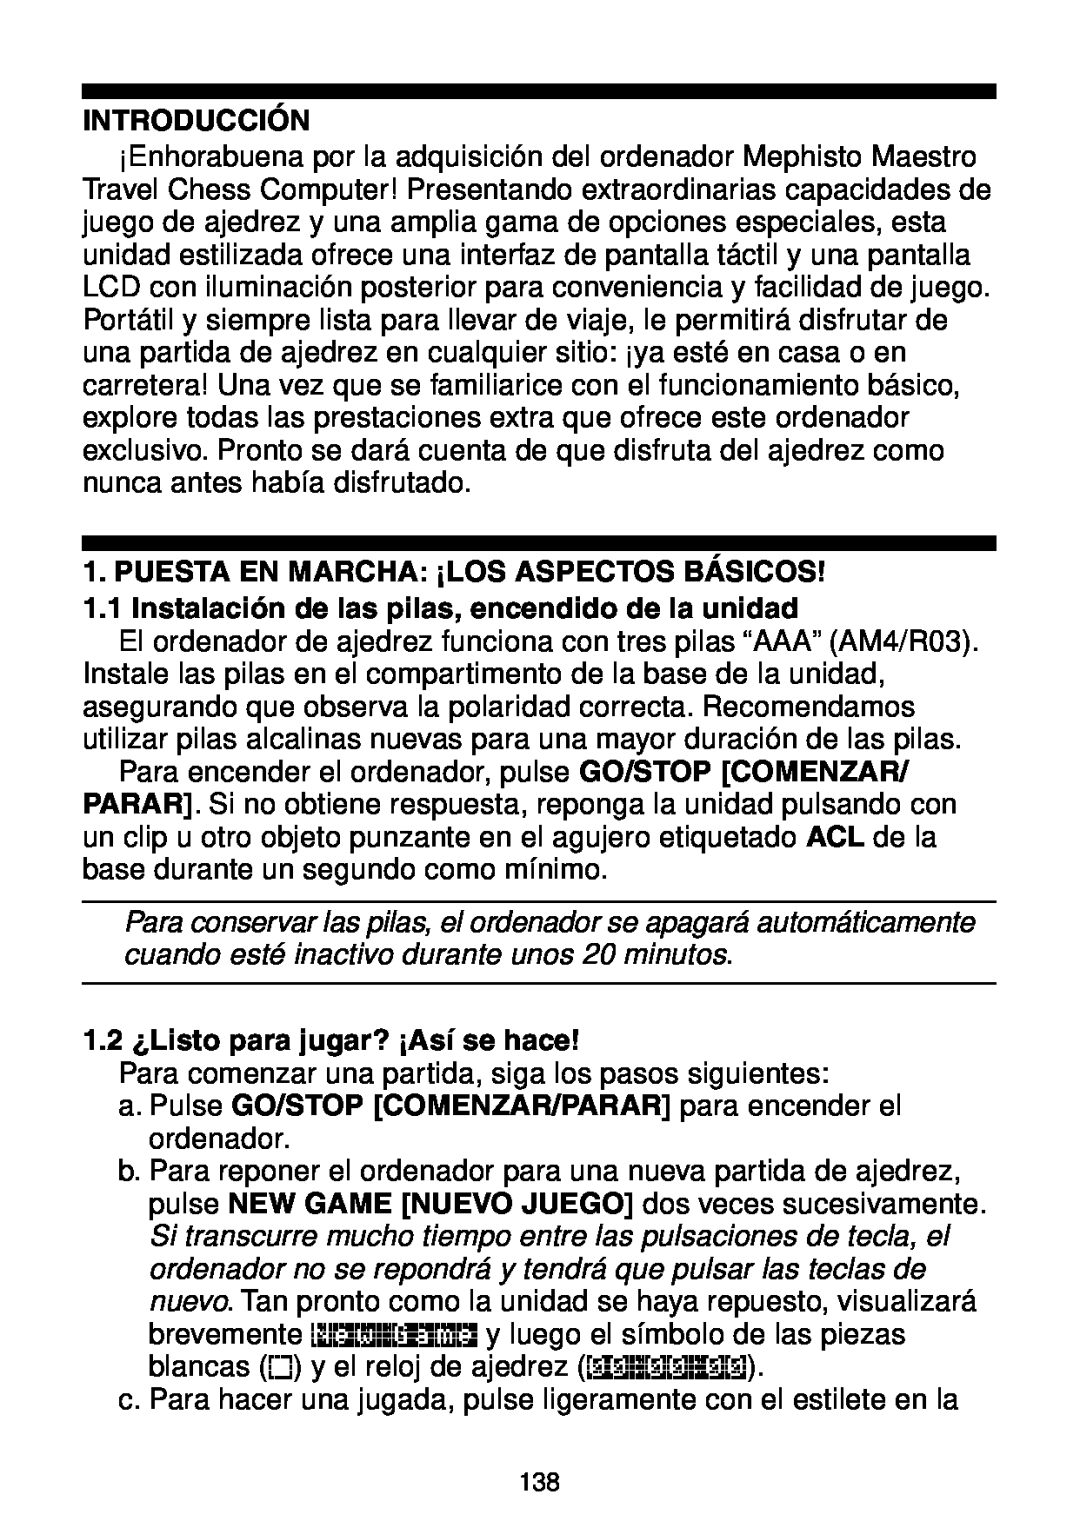 Saitek Maestro Travel Chess Computer manual Introducción, 1.2 ¿Listo para jugar? ¡Así se hace 